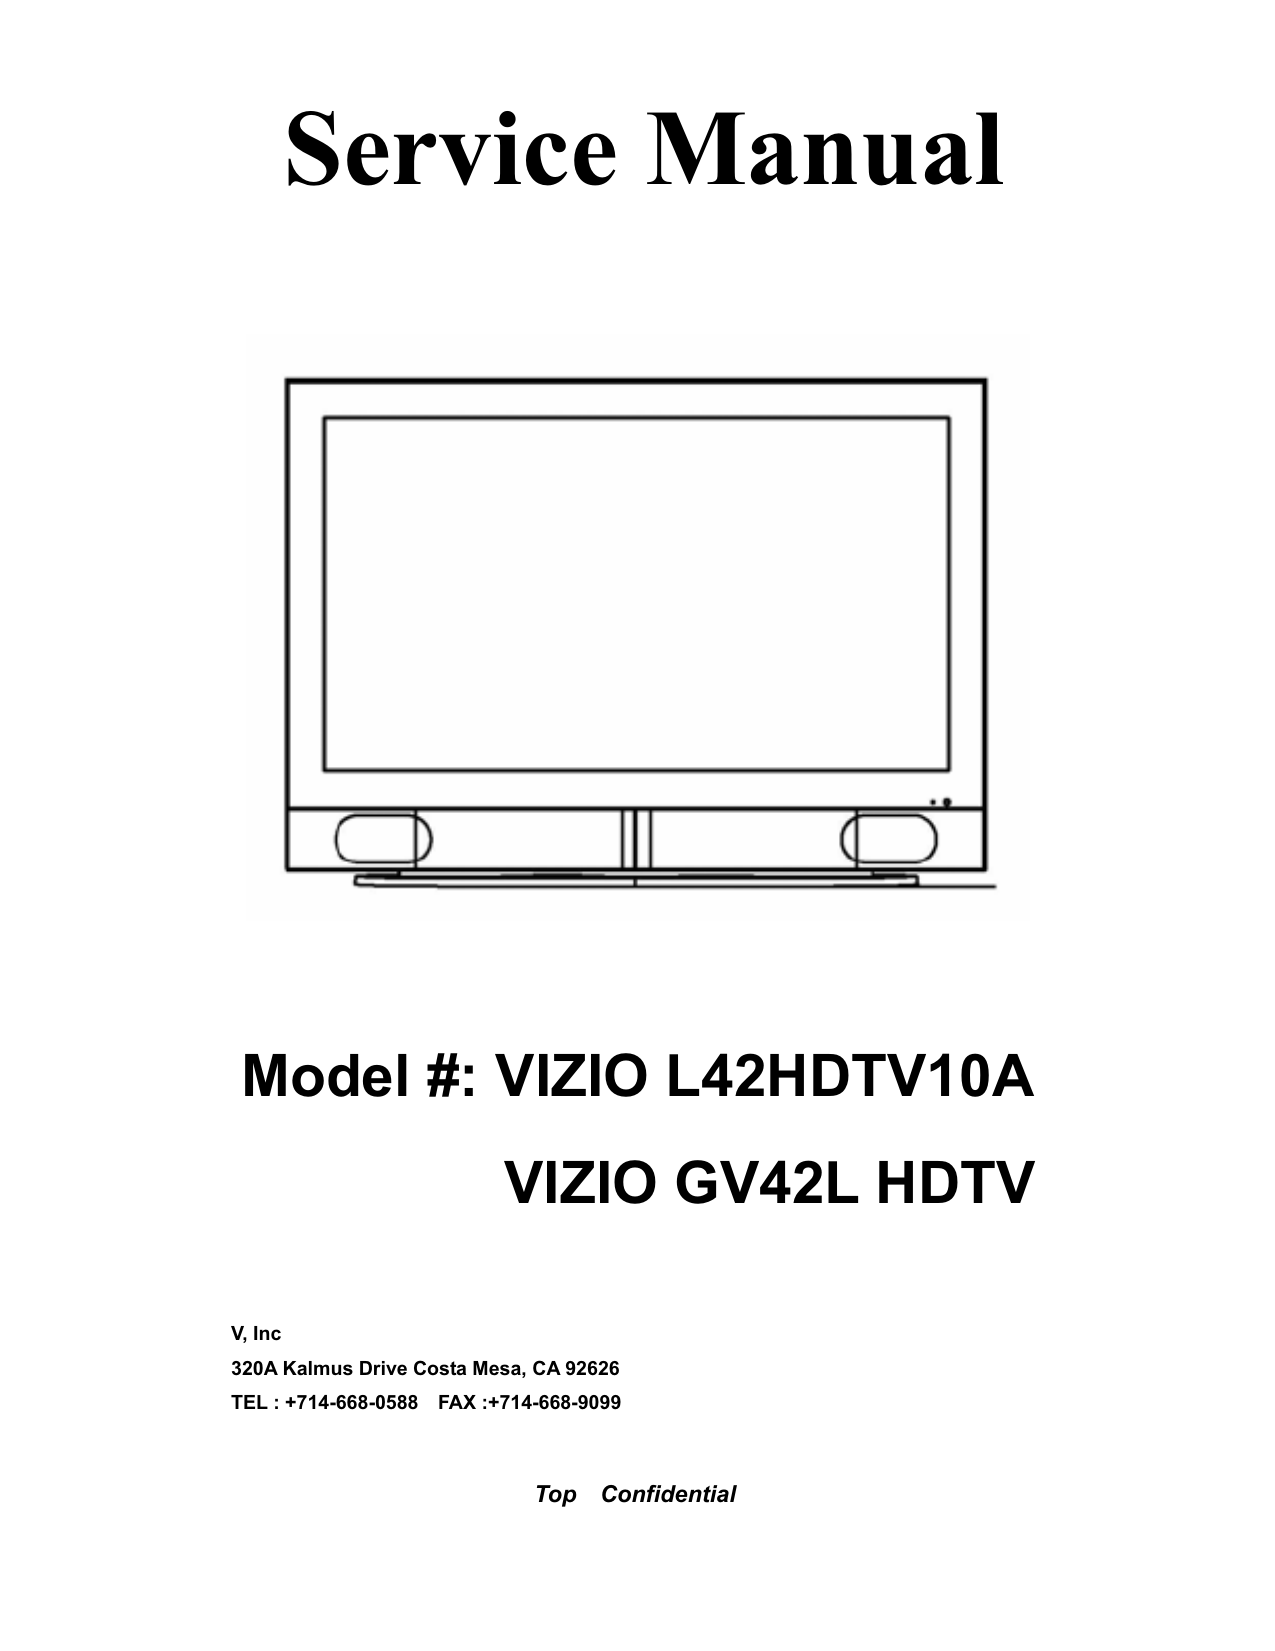 GV42L HDTV